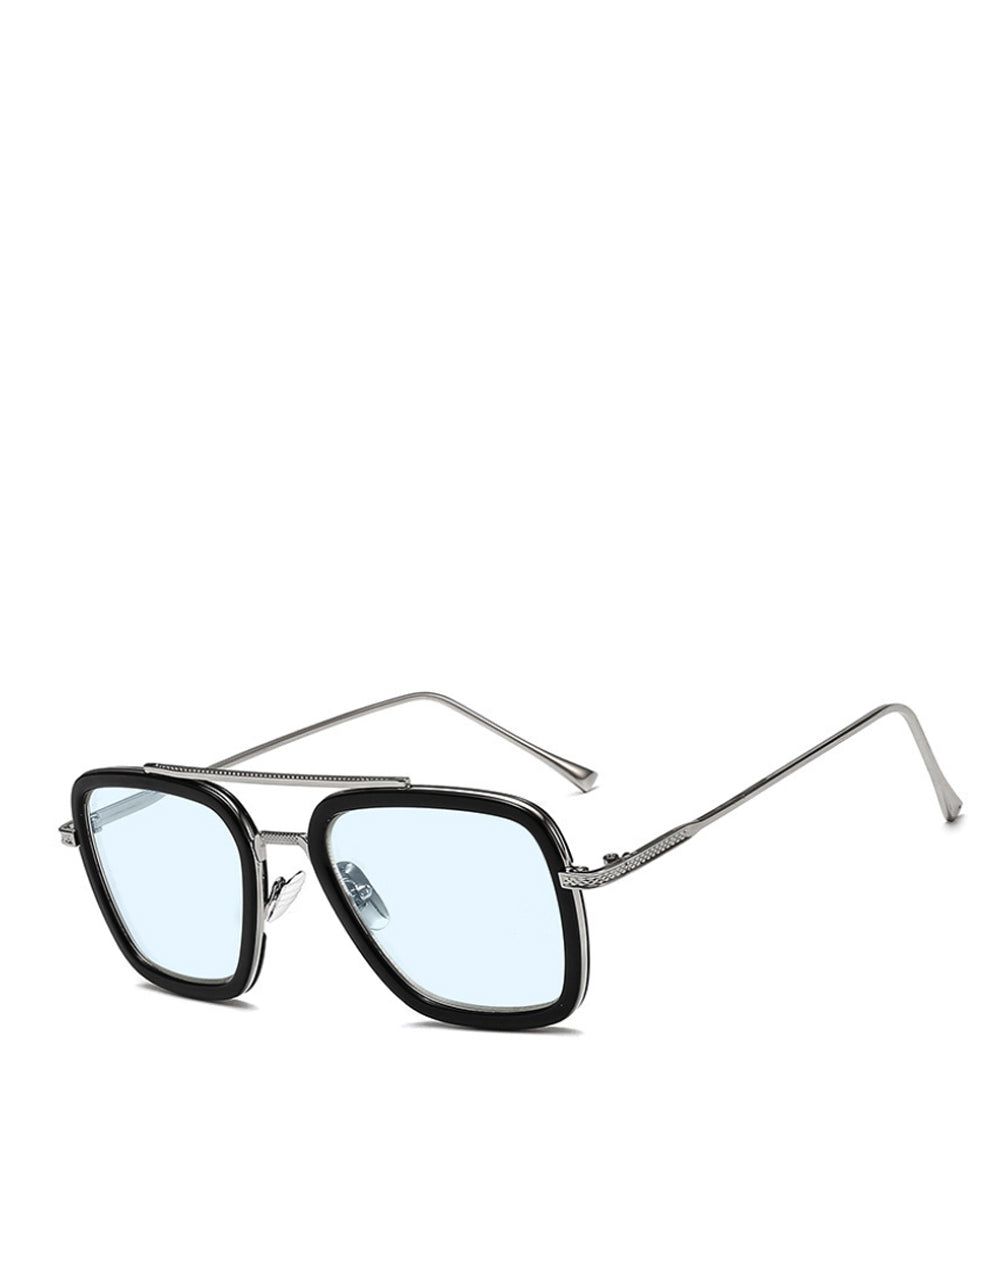 Stark/Parker EDITH Style Sunglasses Silver Frame/Light Blue Lens